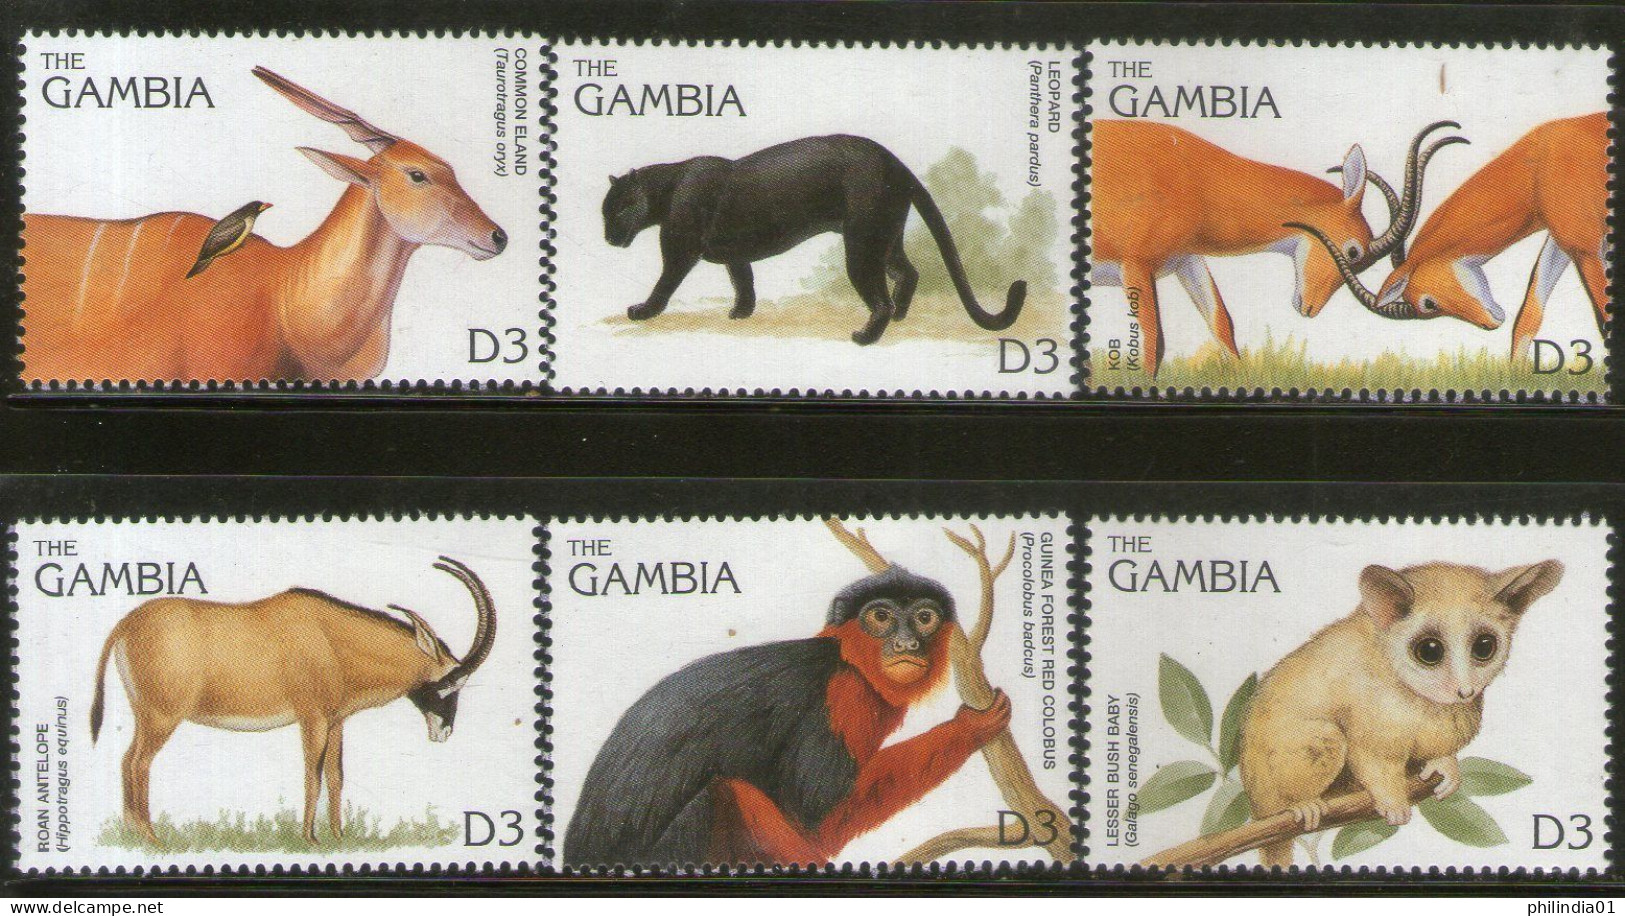 Gambia 1996 Monkey Mammals Wildlife Animals Sc 1740 6v MNH # 807 - Apen